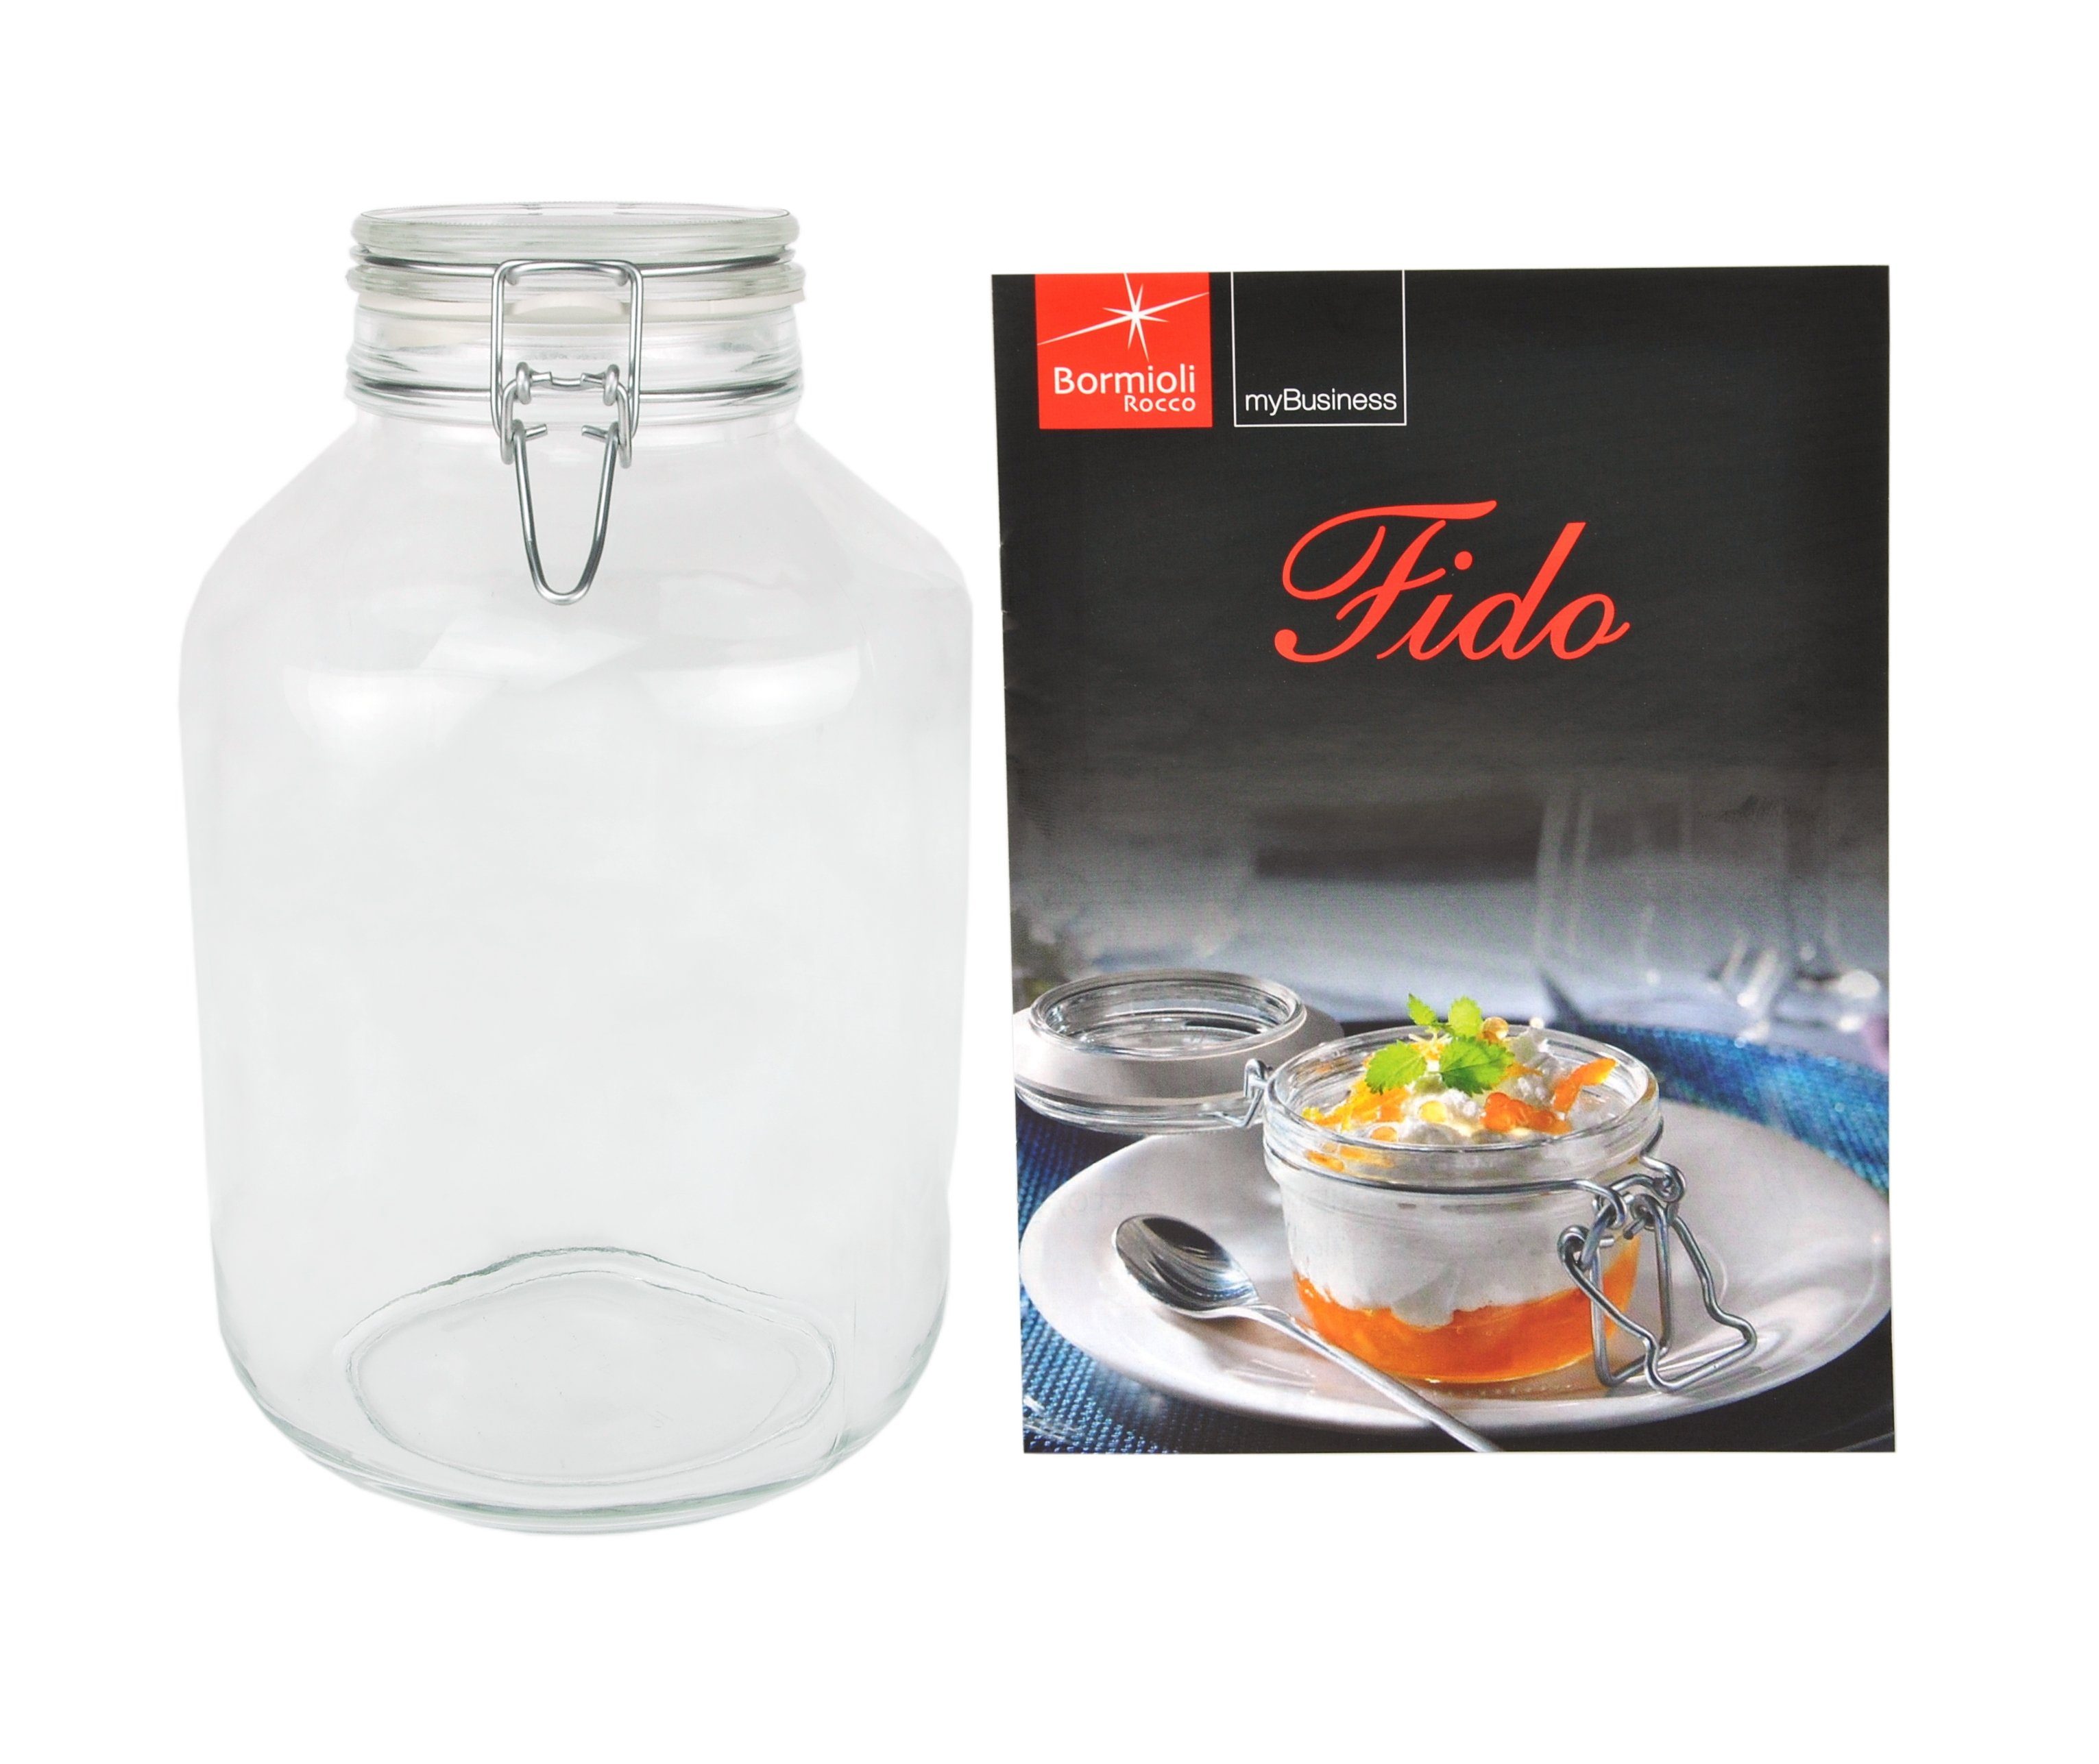 MamboCat Vorratsglas Einmachglas Bügelverschluss Original Fido 4,0L incl. Bormioli Rezeptheft